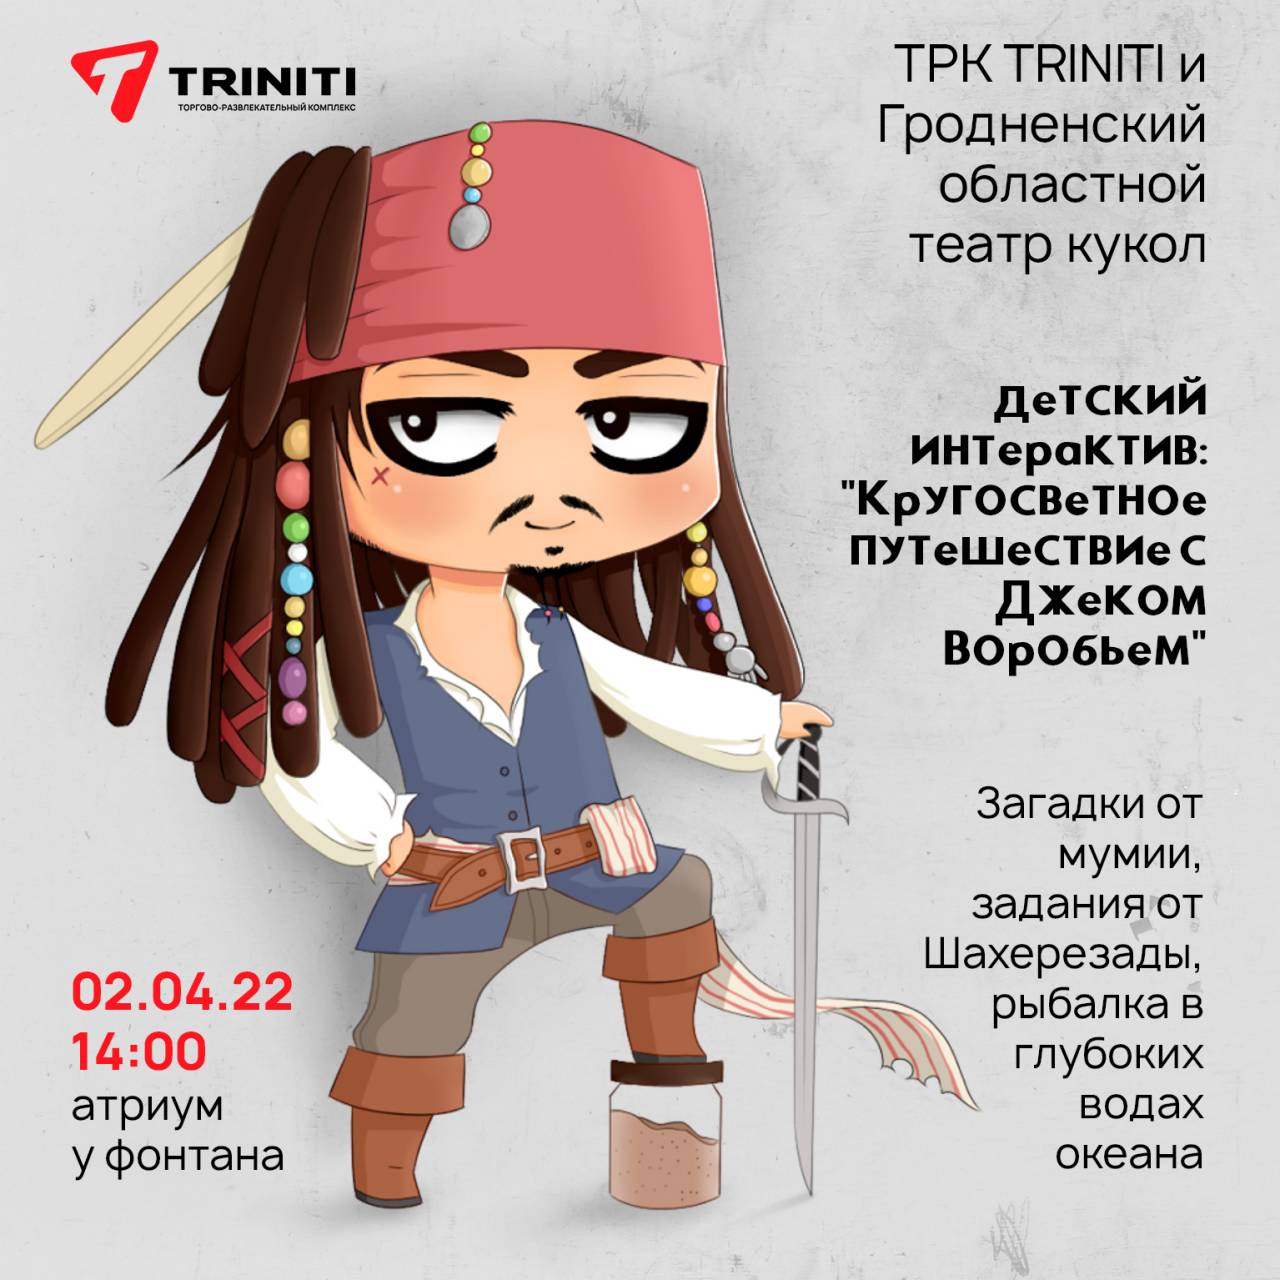 В Triniti для детей состоится бесплатное представление от Гродненского кукольного театра